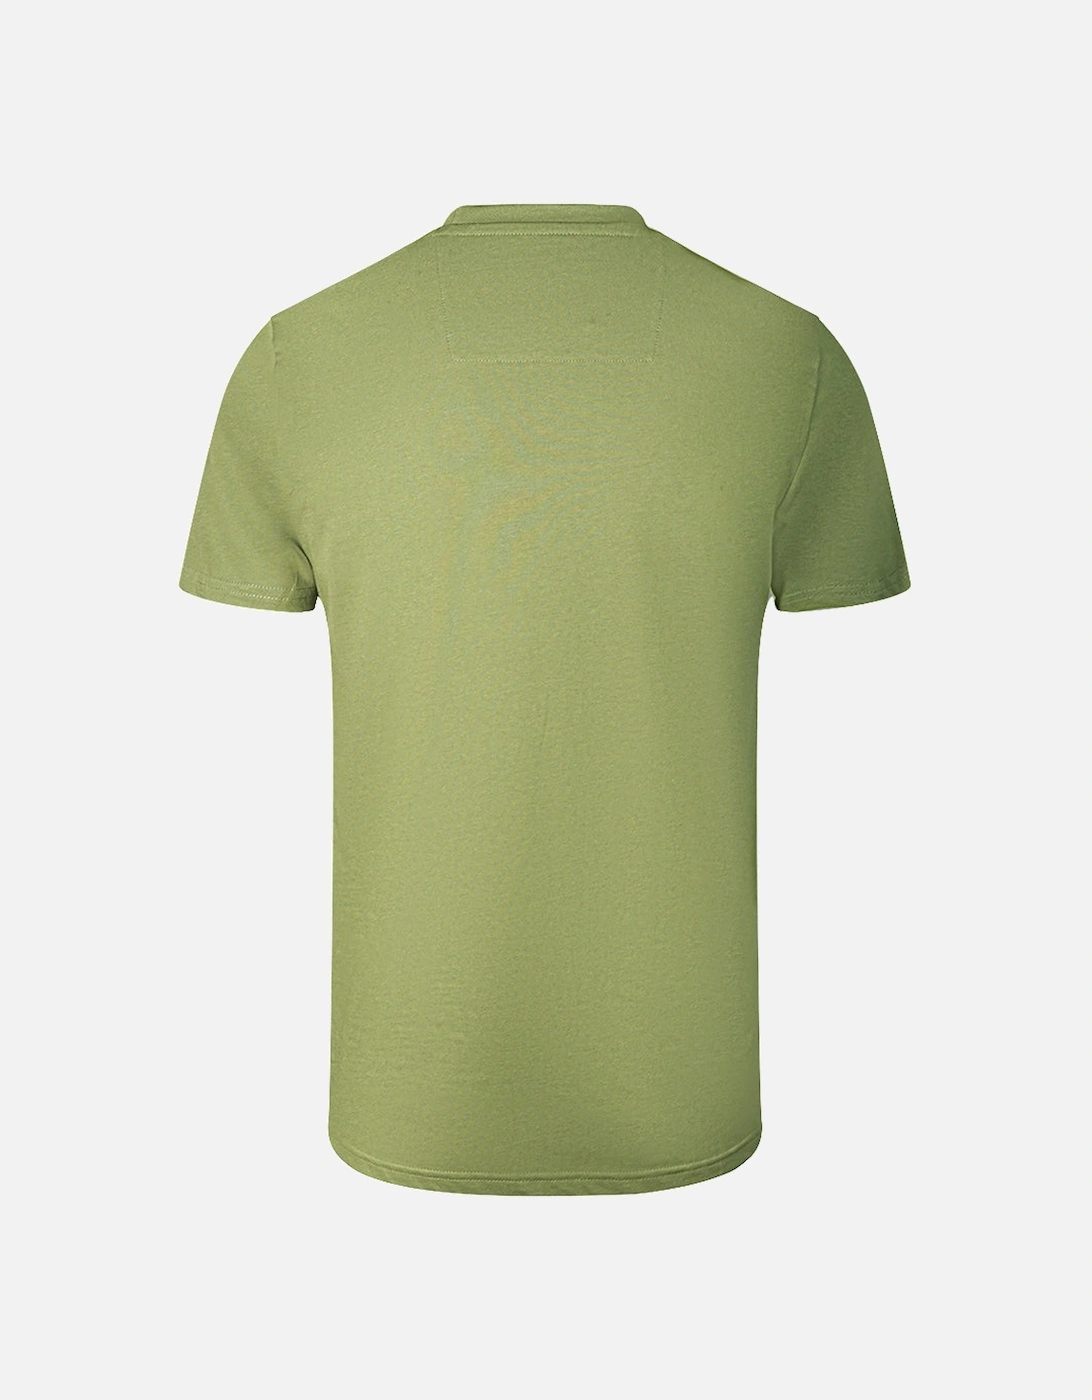 Cavalli Class Leopard Print Logo Green T-Shirt